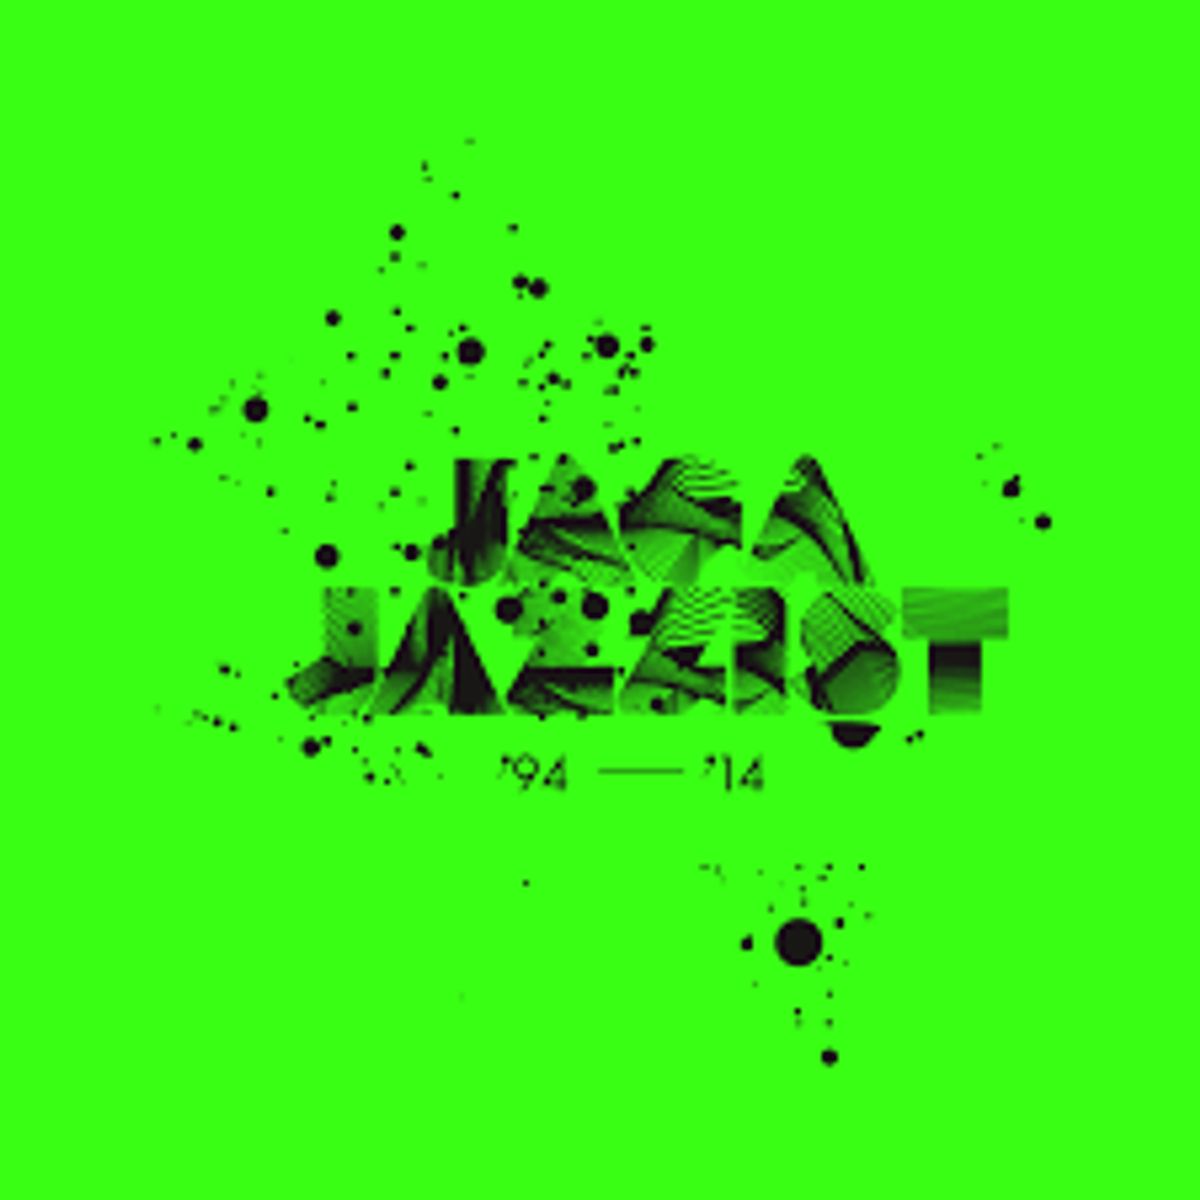 Jaga Jazzist - ''94 - '14'